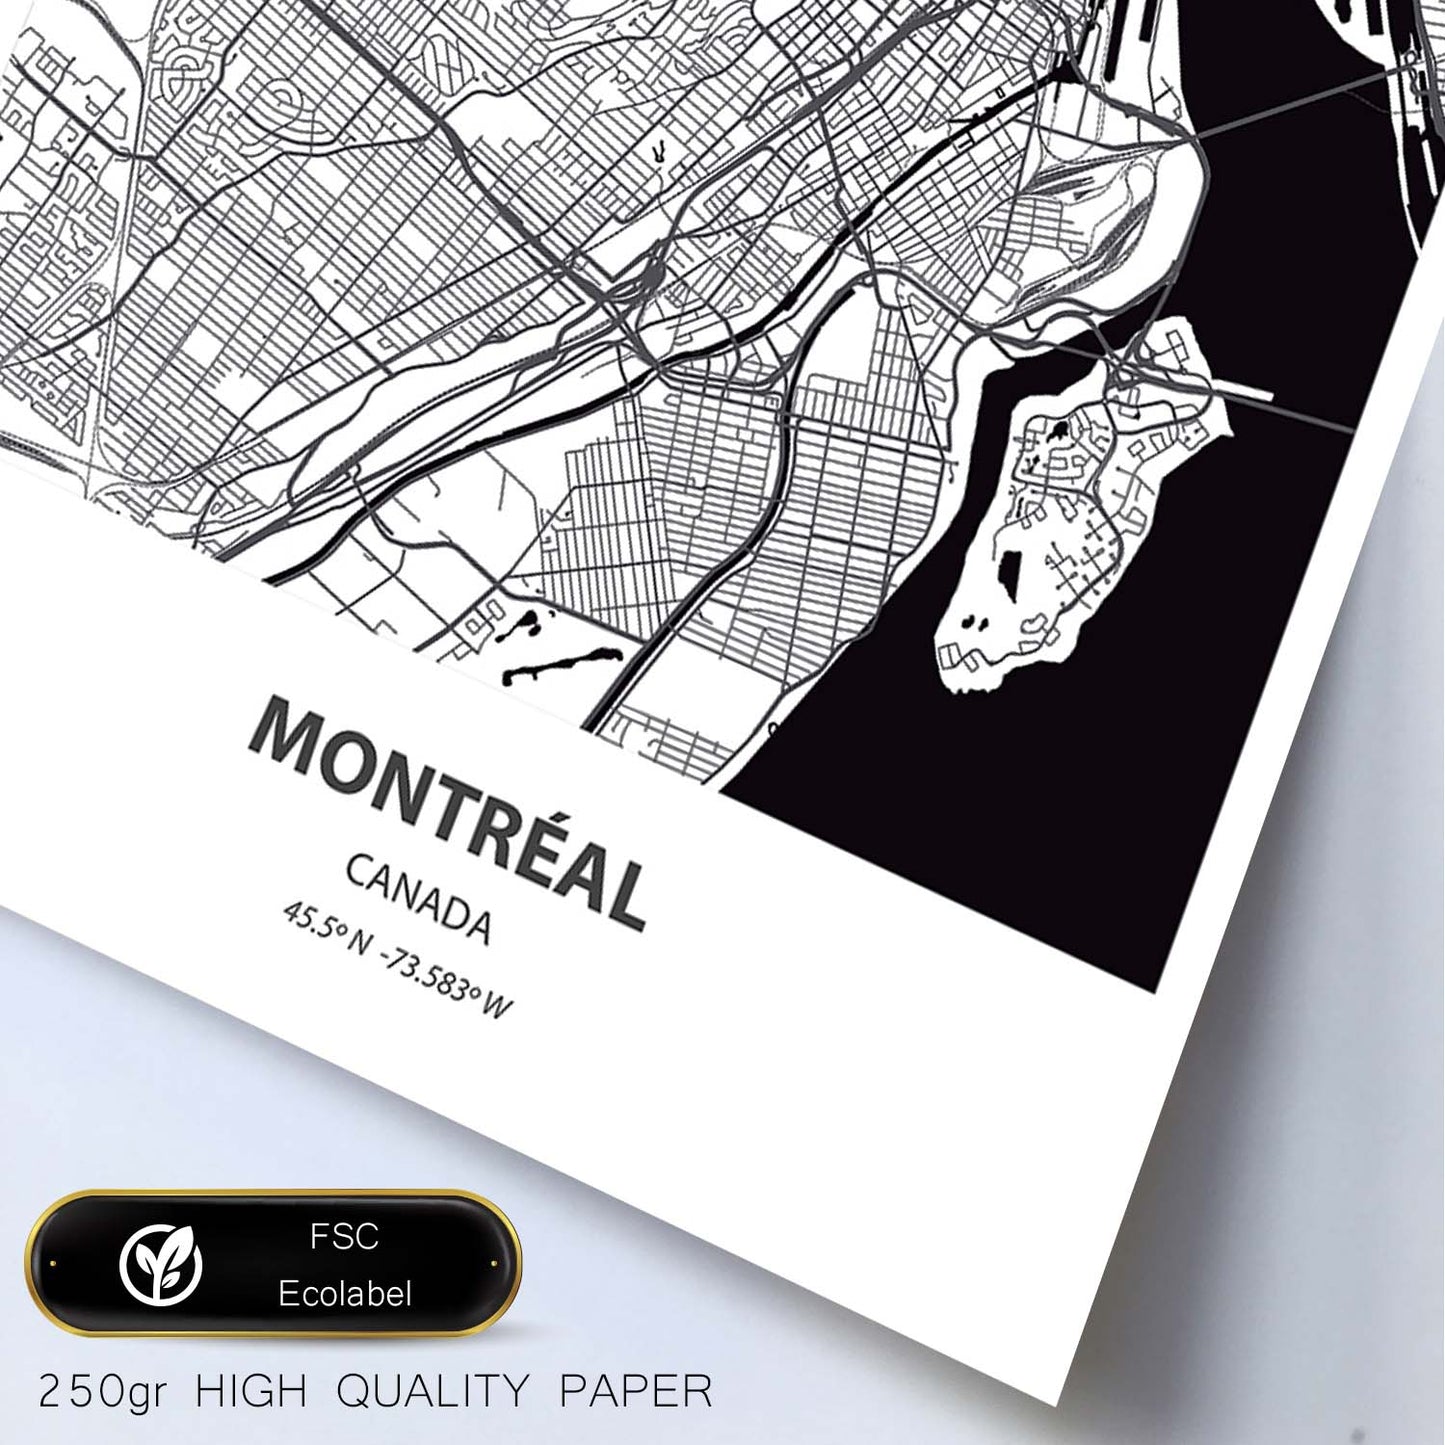 Poster con mapa de Montreal - canada. Láminas de ciudades de Canada con mares y ríos en color negro.-Artwork-Nacnic-Nacnic Estudio SL